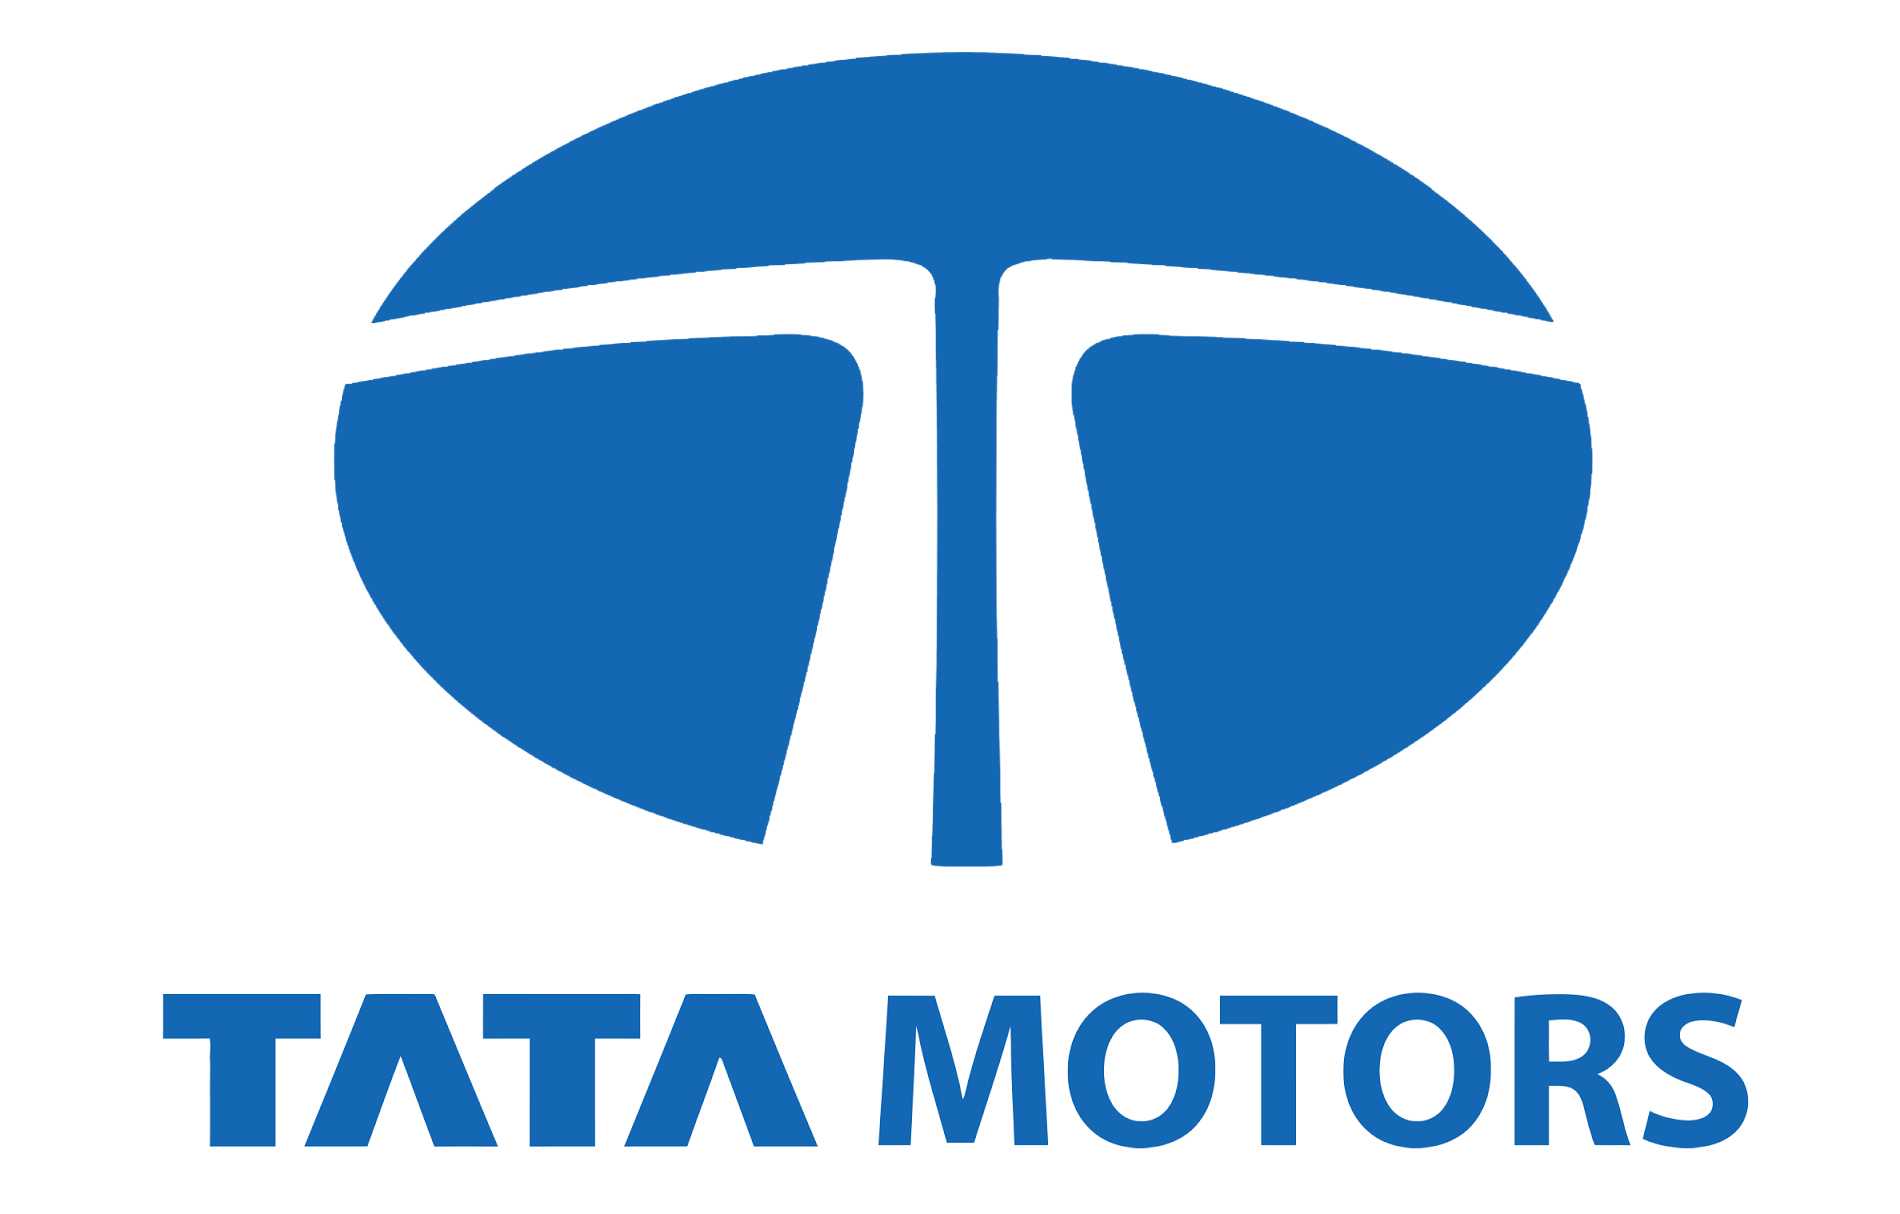 Tata Motors Cars Showroom - Mudgal Motors|Show Room|Automotive